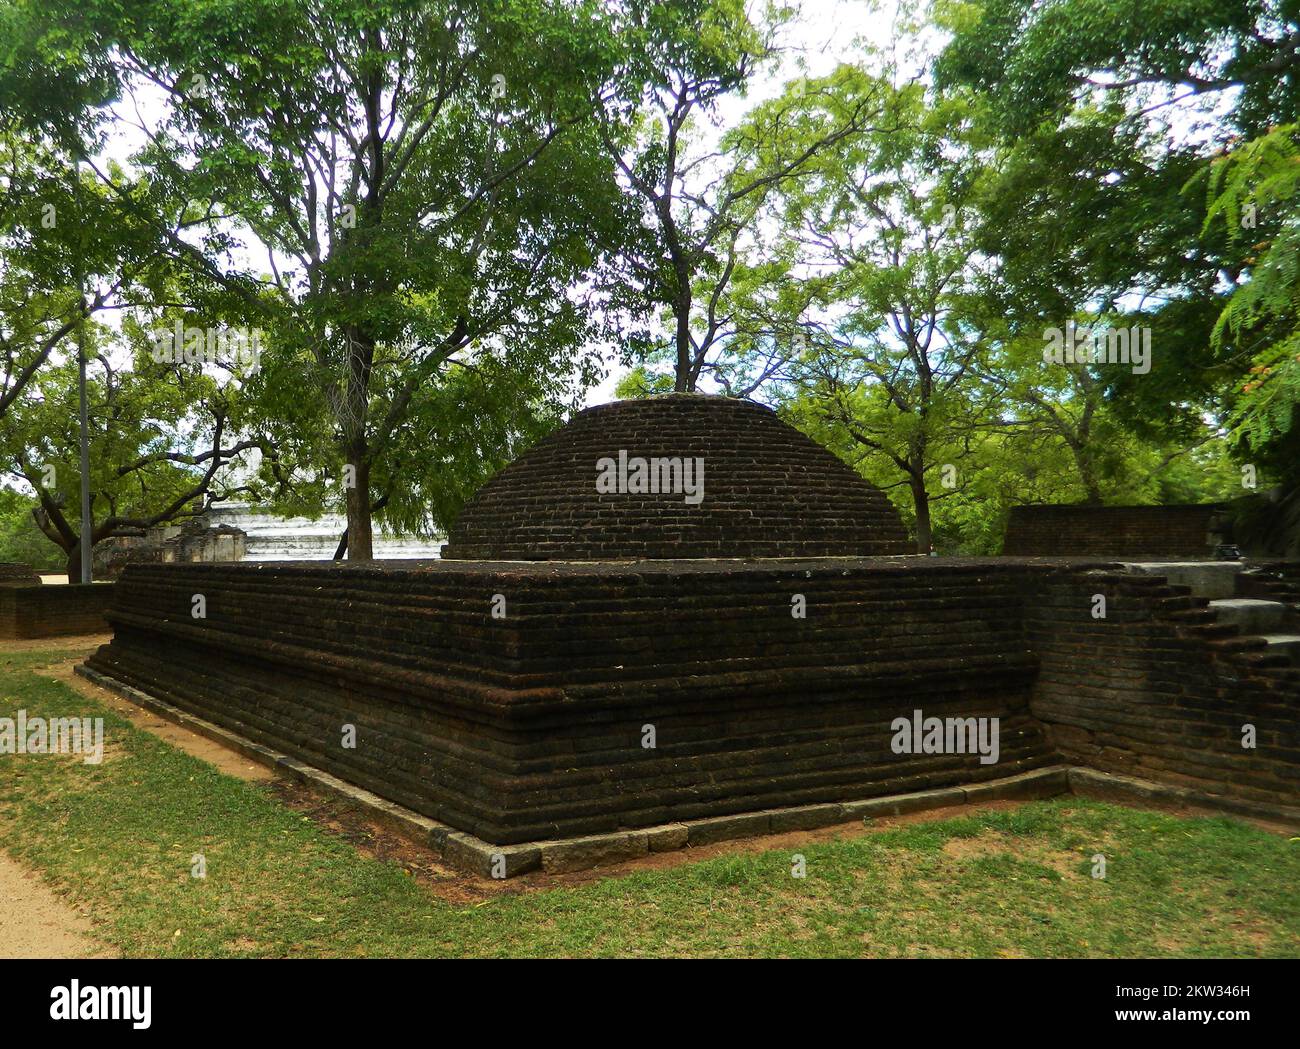 Polonnaruwa est le deuxième royaume de l'ancien Sri Lanka. Le roi Parakramabahu 4 a développé de nombreux wewas et temples et a établi la subsistance du pays. La maison d'images Polonnaruwa Lankathilaka est une maison d'images de Bouddha monolithique également construite par le roi Parakramabahu en briques et les murs extérieurs sont couverts de dessins et sculptures élaborés. L'époque dorée fut ruinée par le roi Maga en envahissant et détruisant les temples et les sanctuaires du royaume. Polonnaruwa, Sri Lanka. Banque D'Images